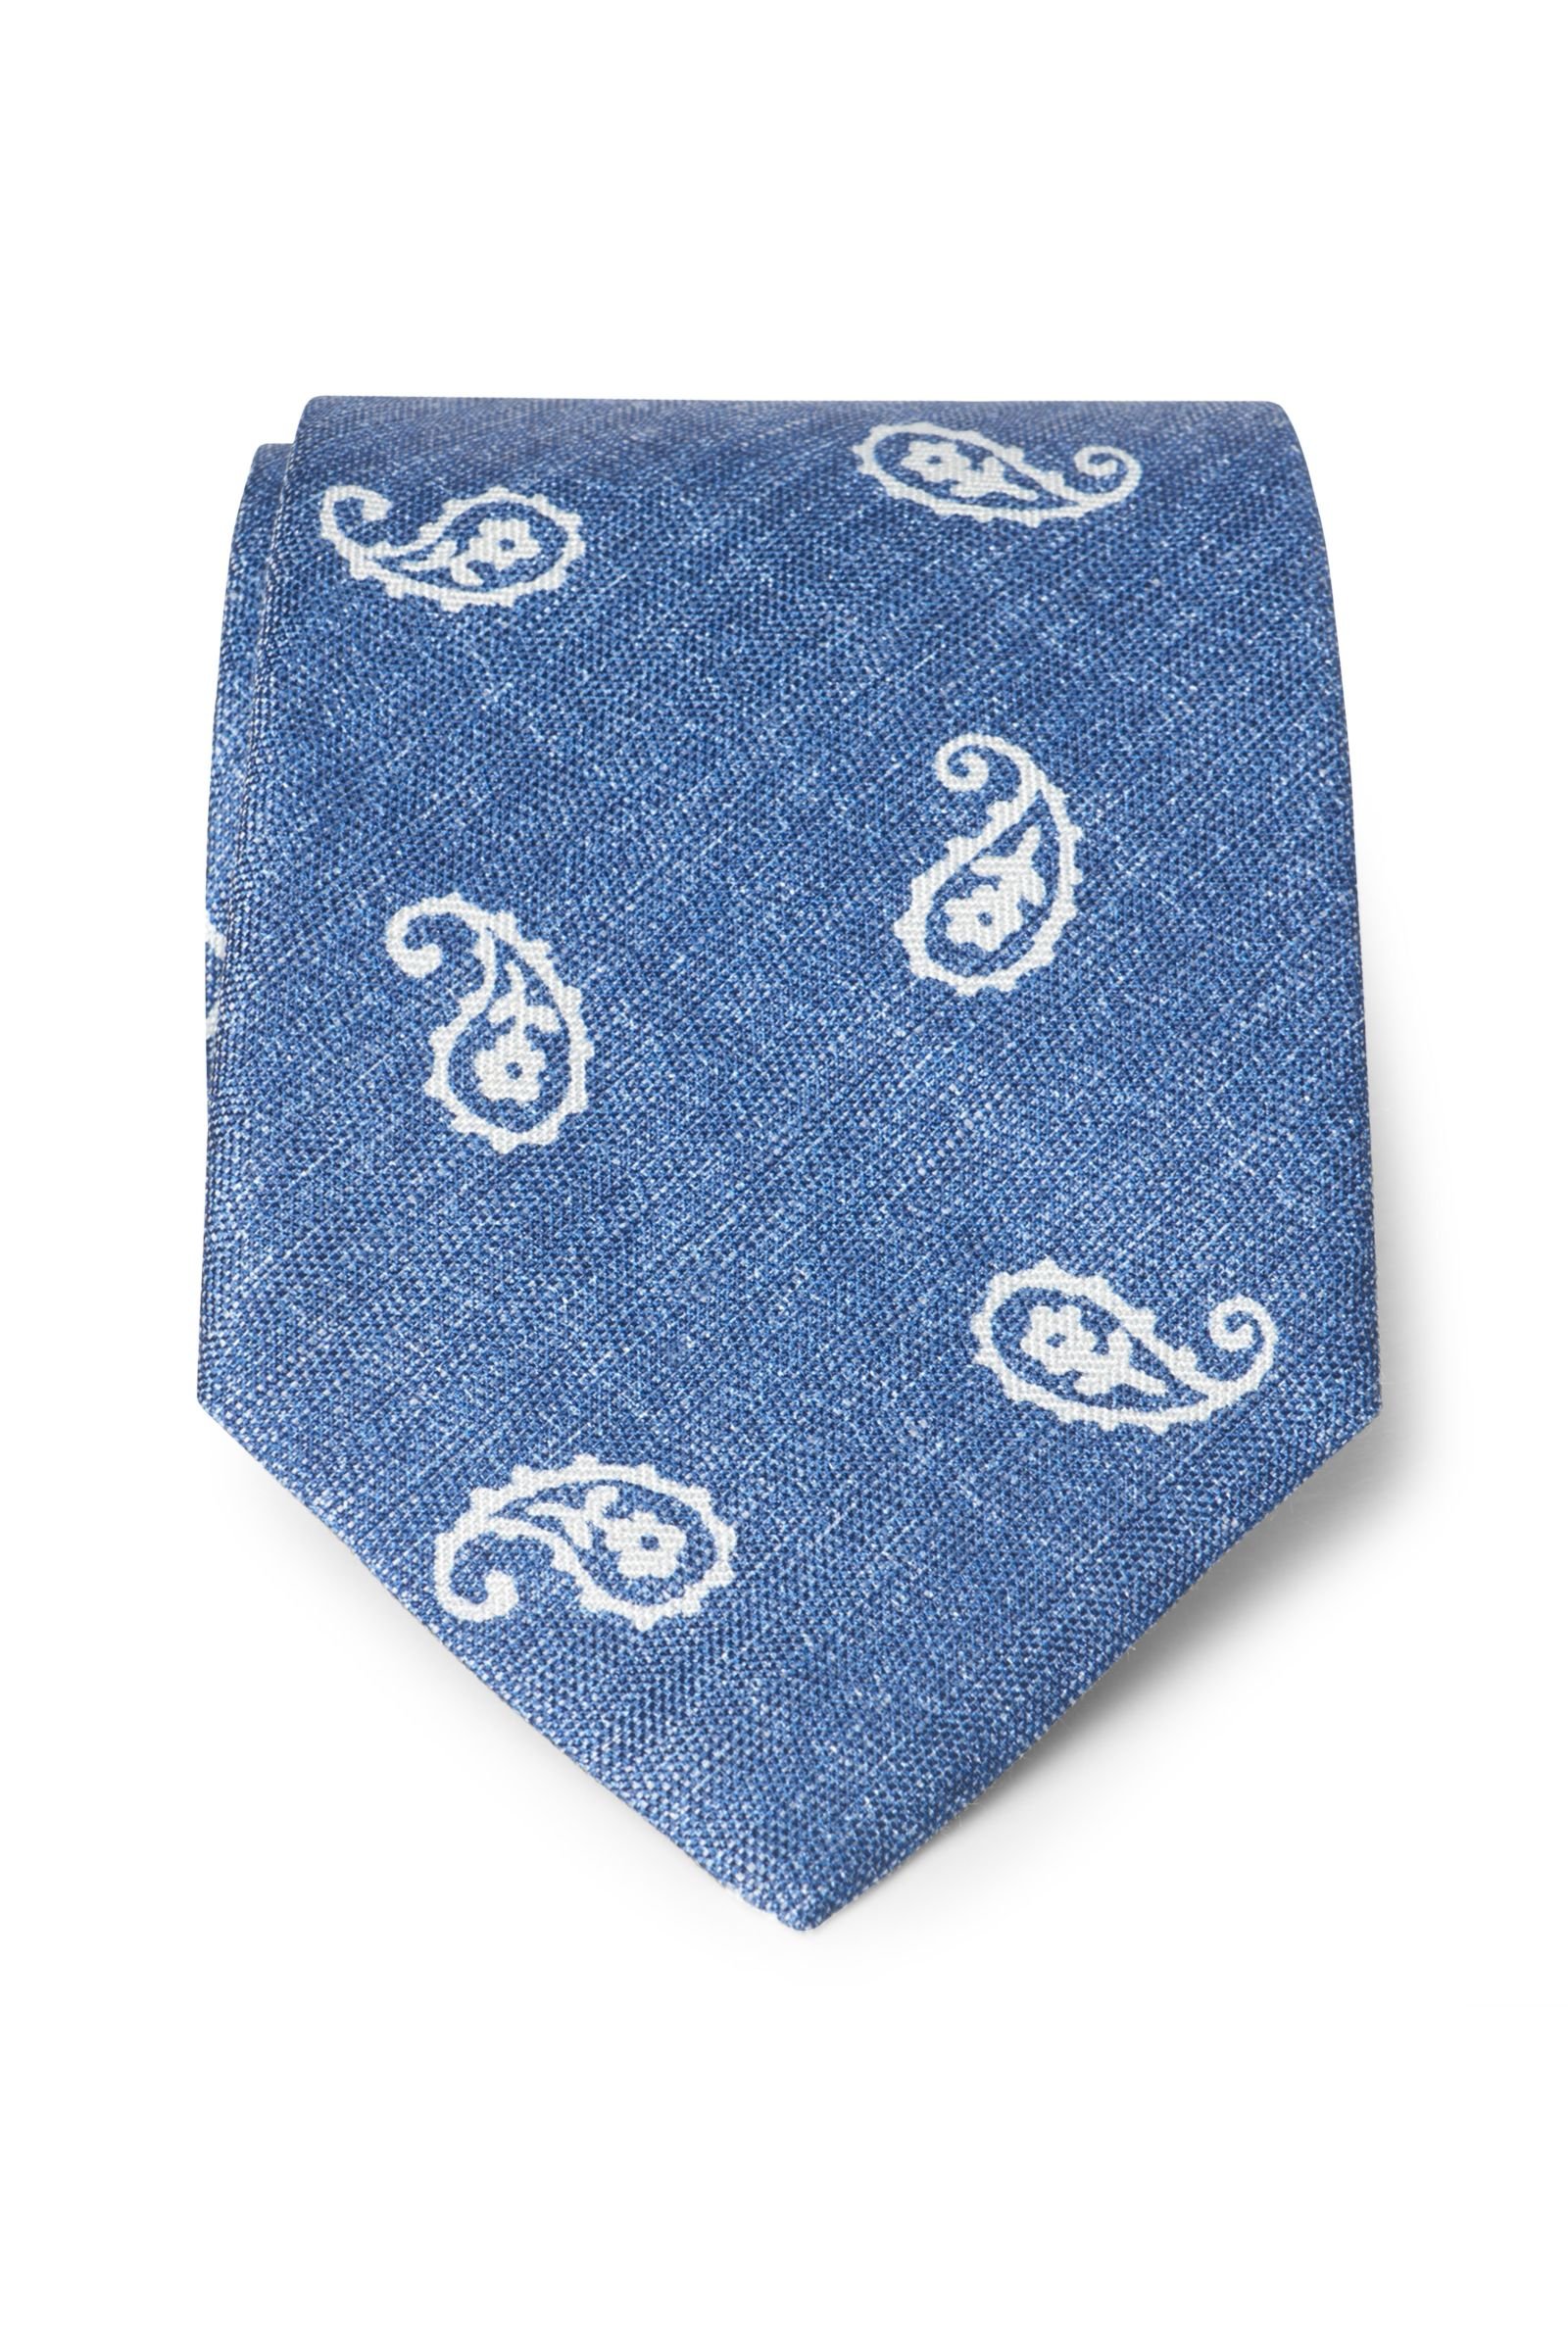 Krawatte graublau gemustert